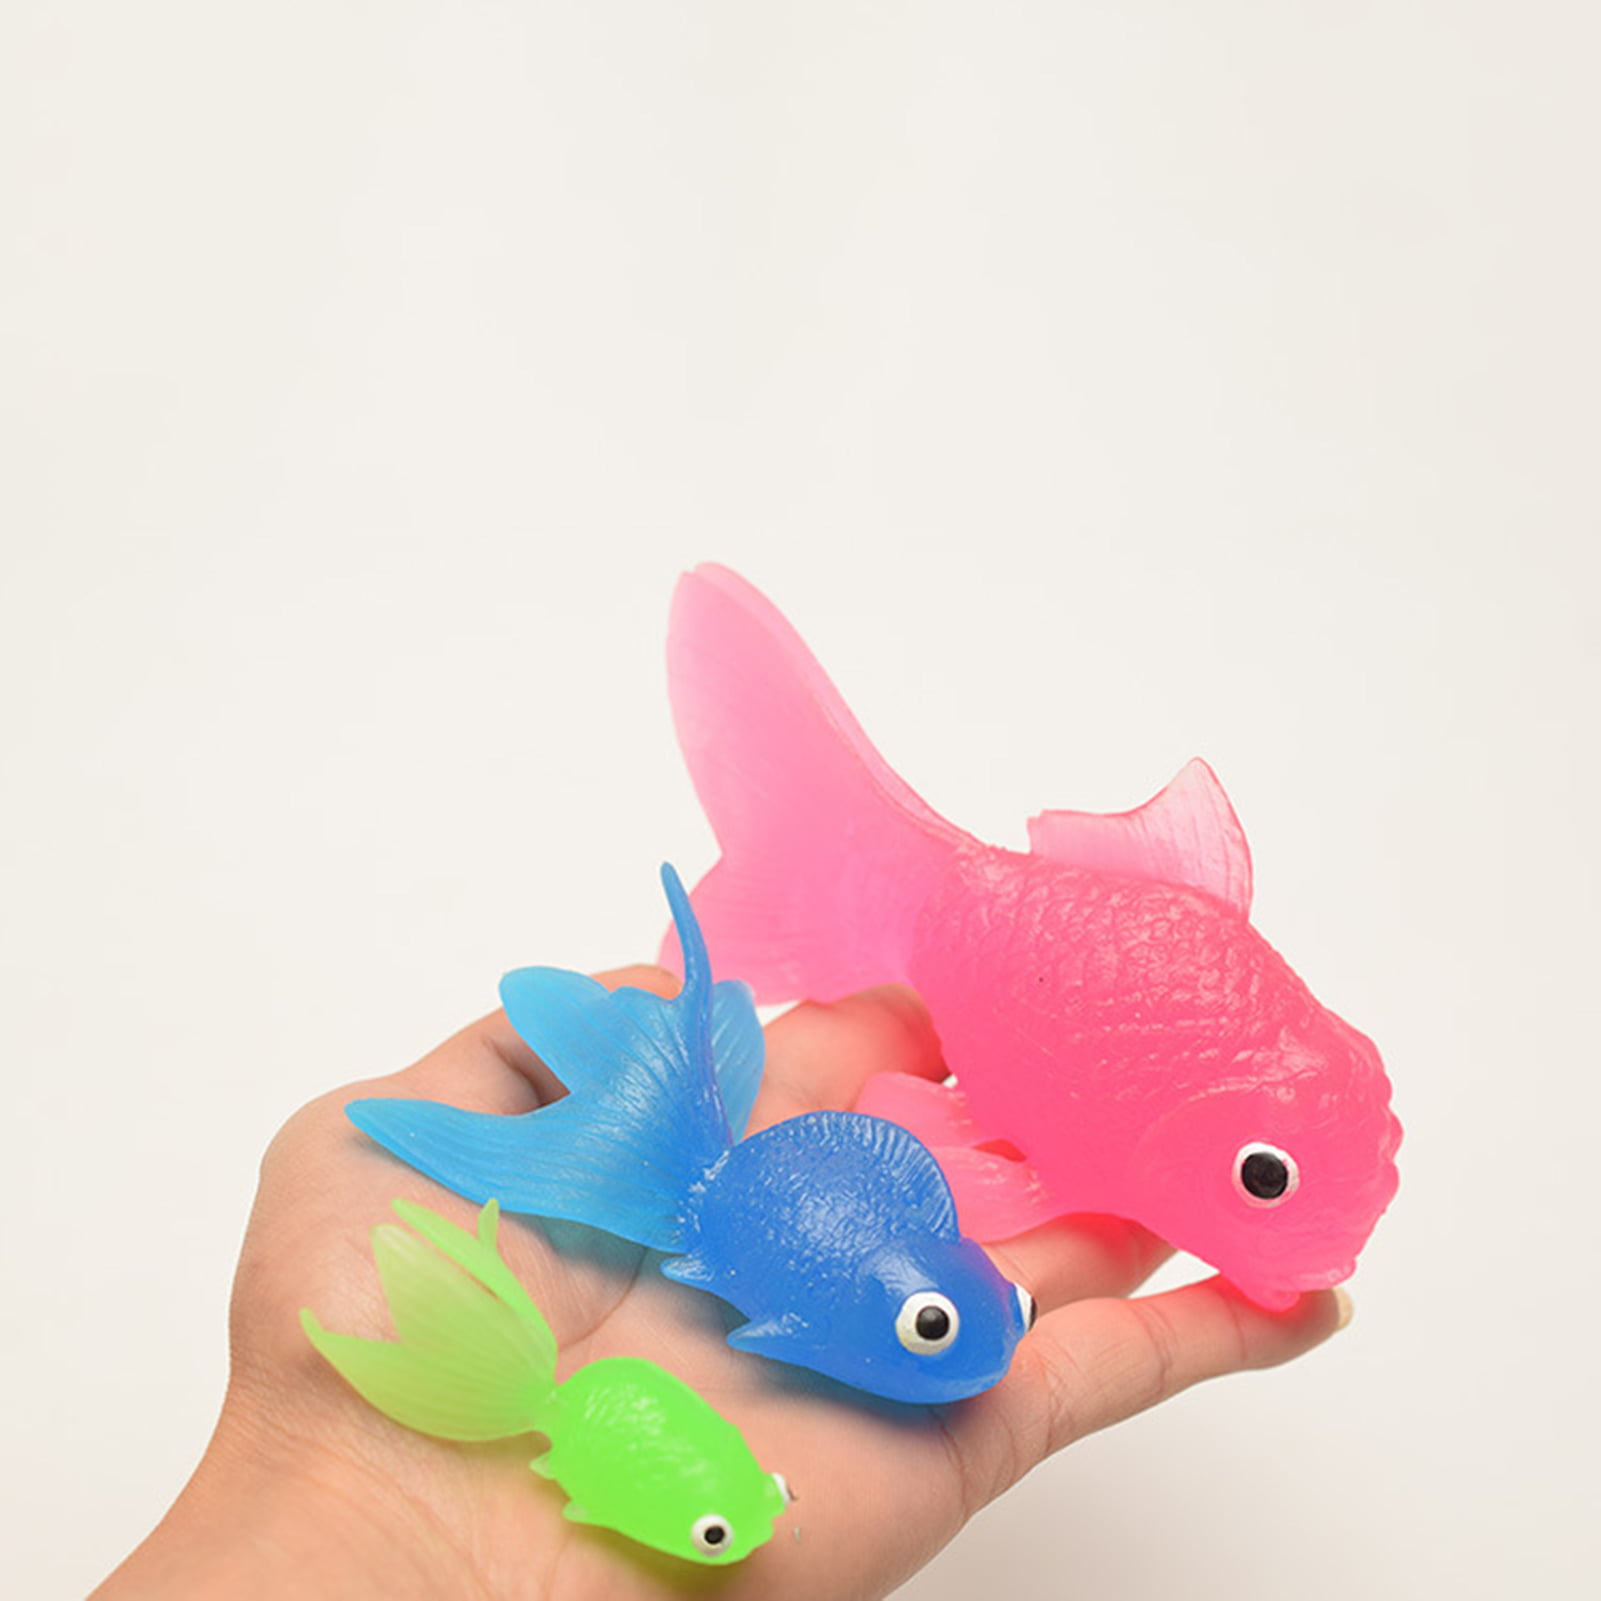 New 1/5pcs Mini Fish Model Miniature Model Fish Carp Simulation Animal Kids  Toys DIY Decorative Goldfish Figurines Home Decor - AliExpress